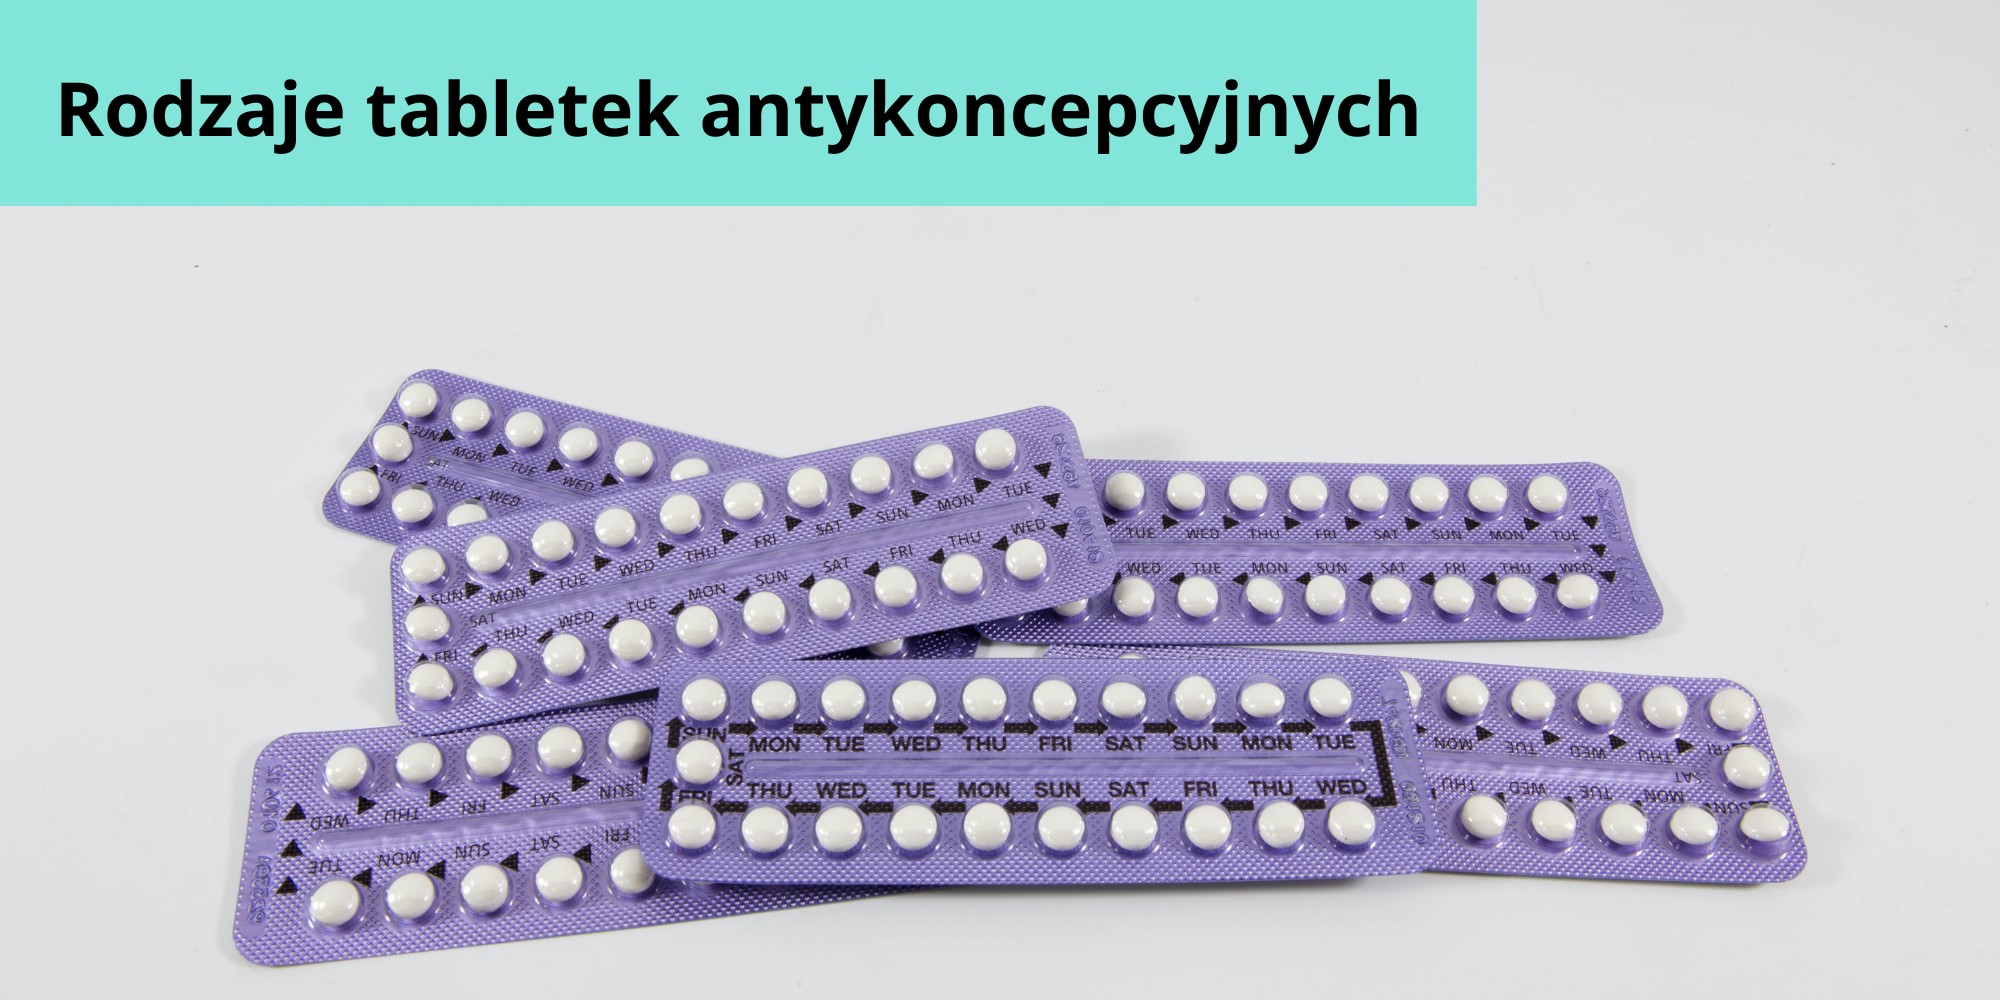 Rodzaje tabletek antykoncepcyjnych